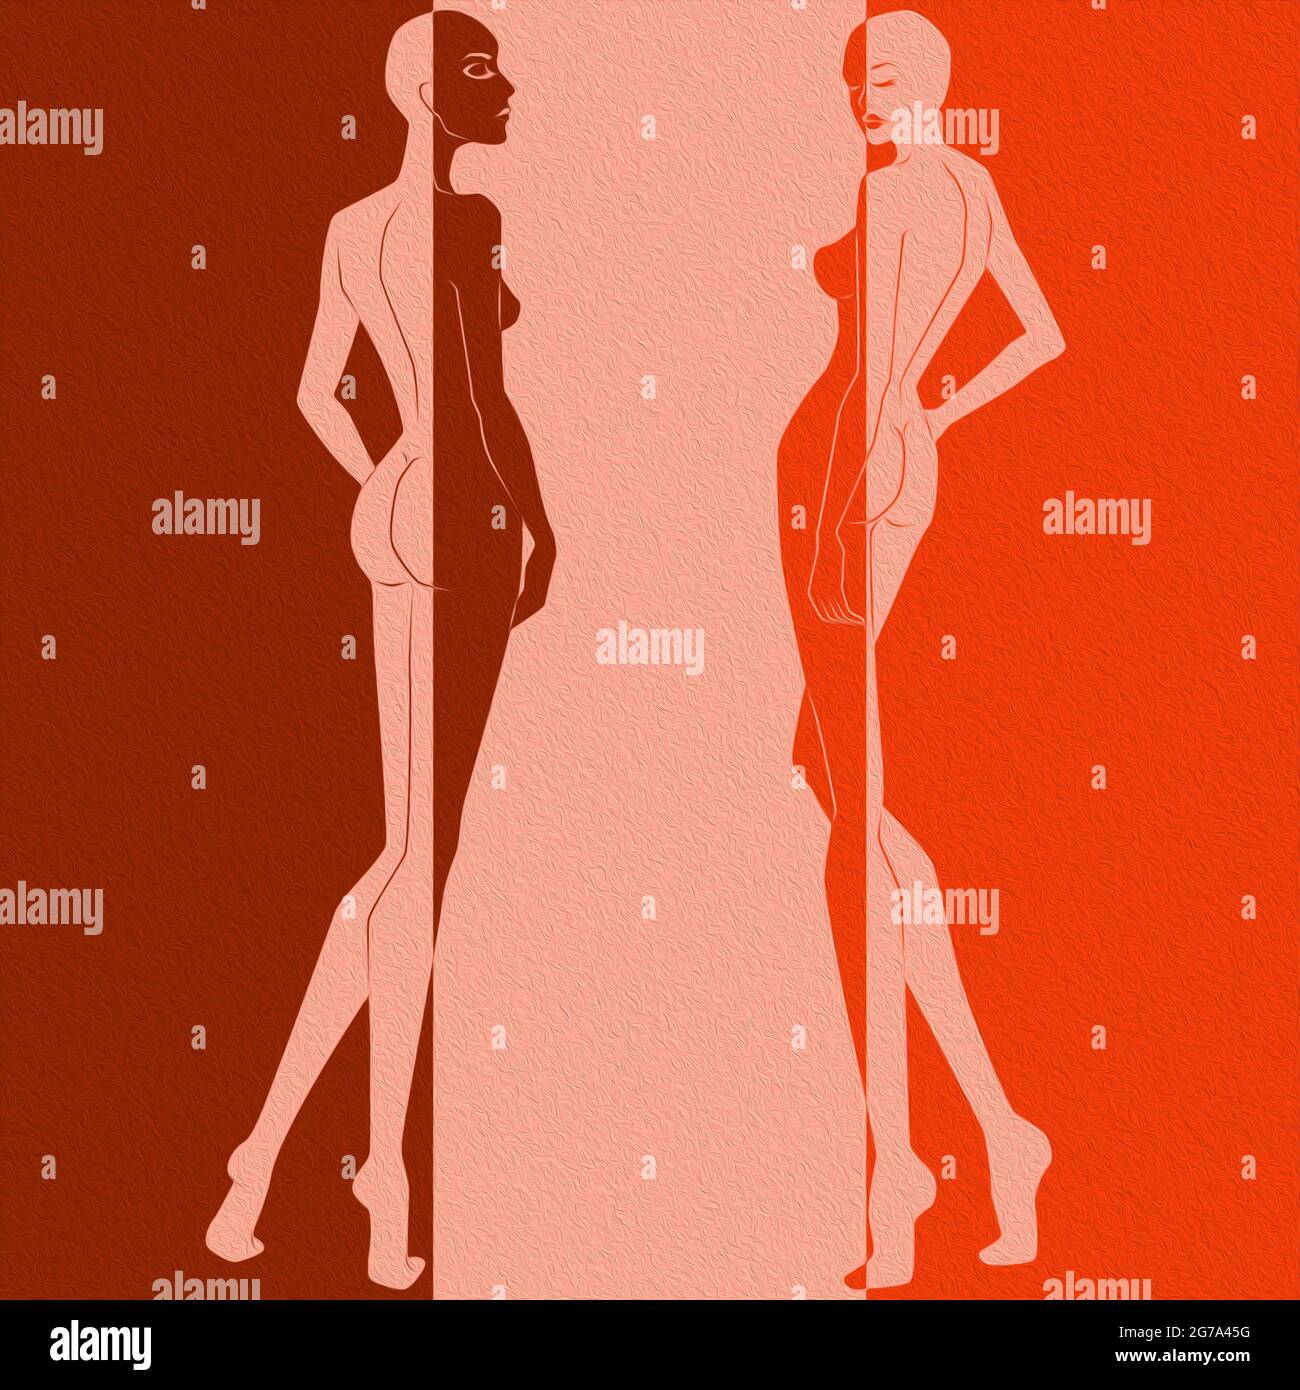 Abstract von zwei eleganten Frau gespalten in negativen und positiven Raum, bunten konzeptionellen Ausdruck Stockfoto